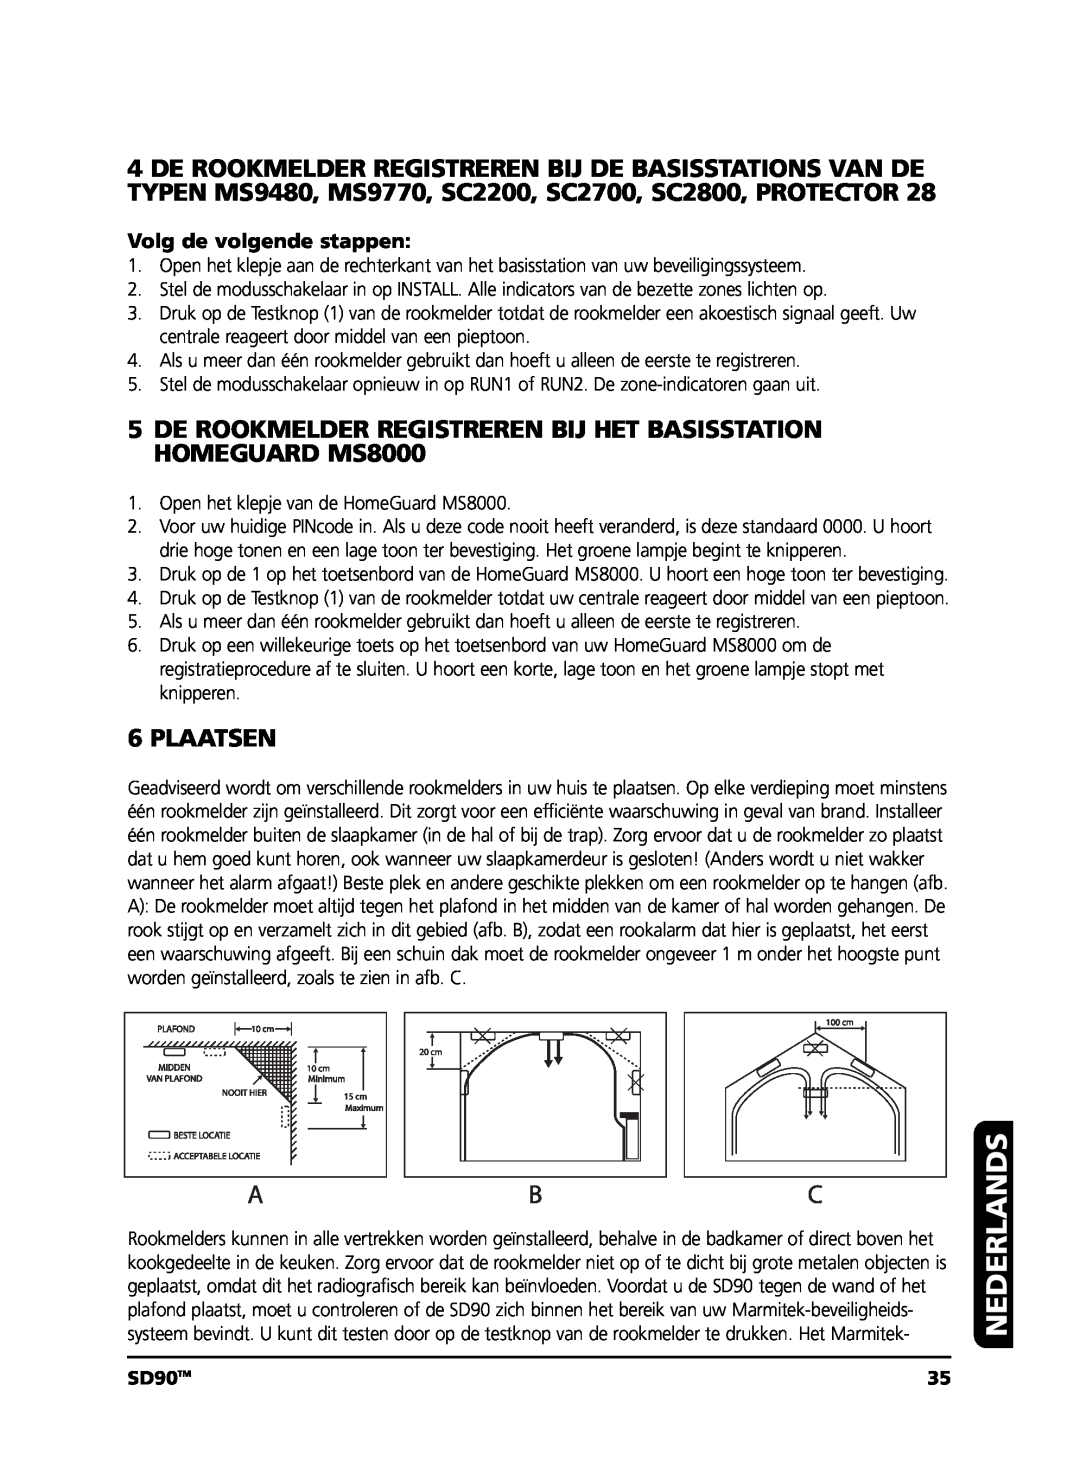 Marmitek user manual Plaatsen, Nederlands, SD90TM 